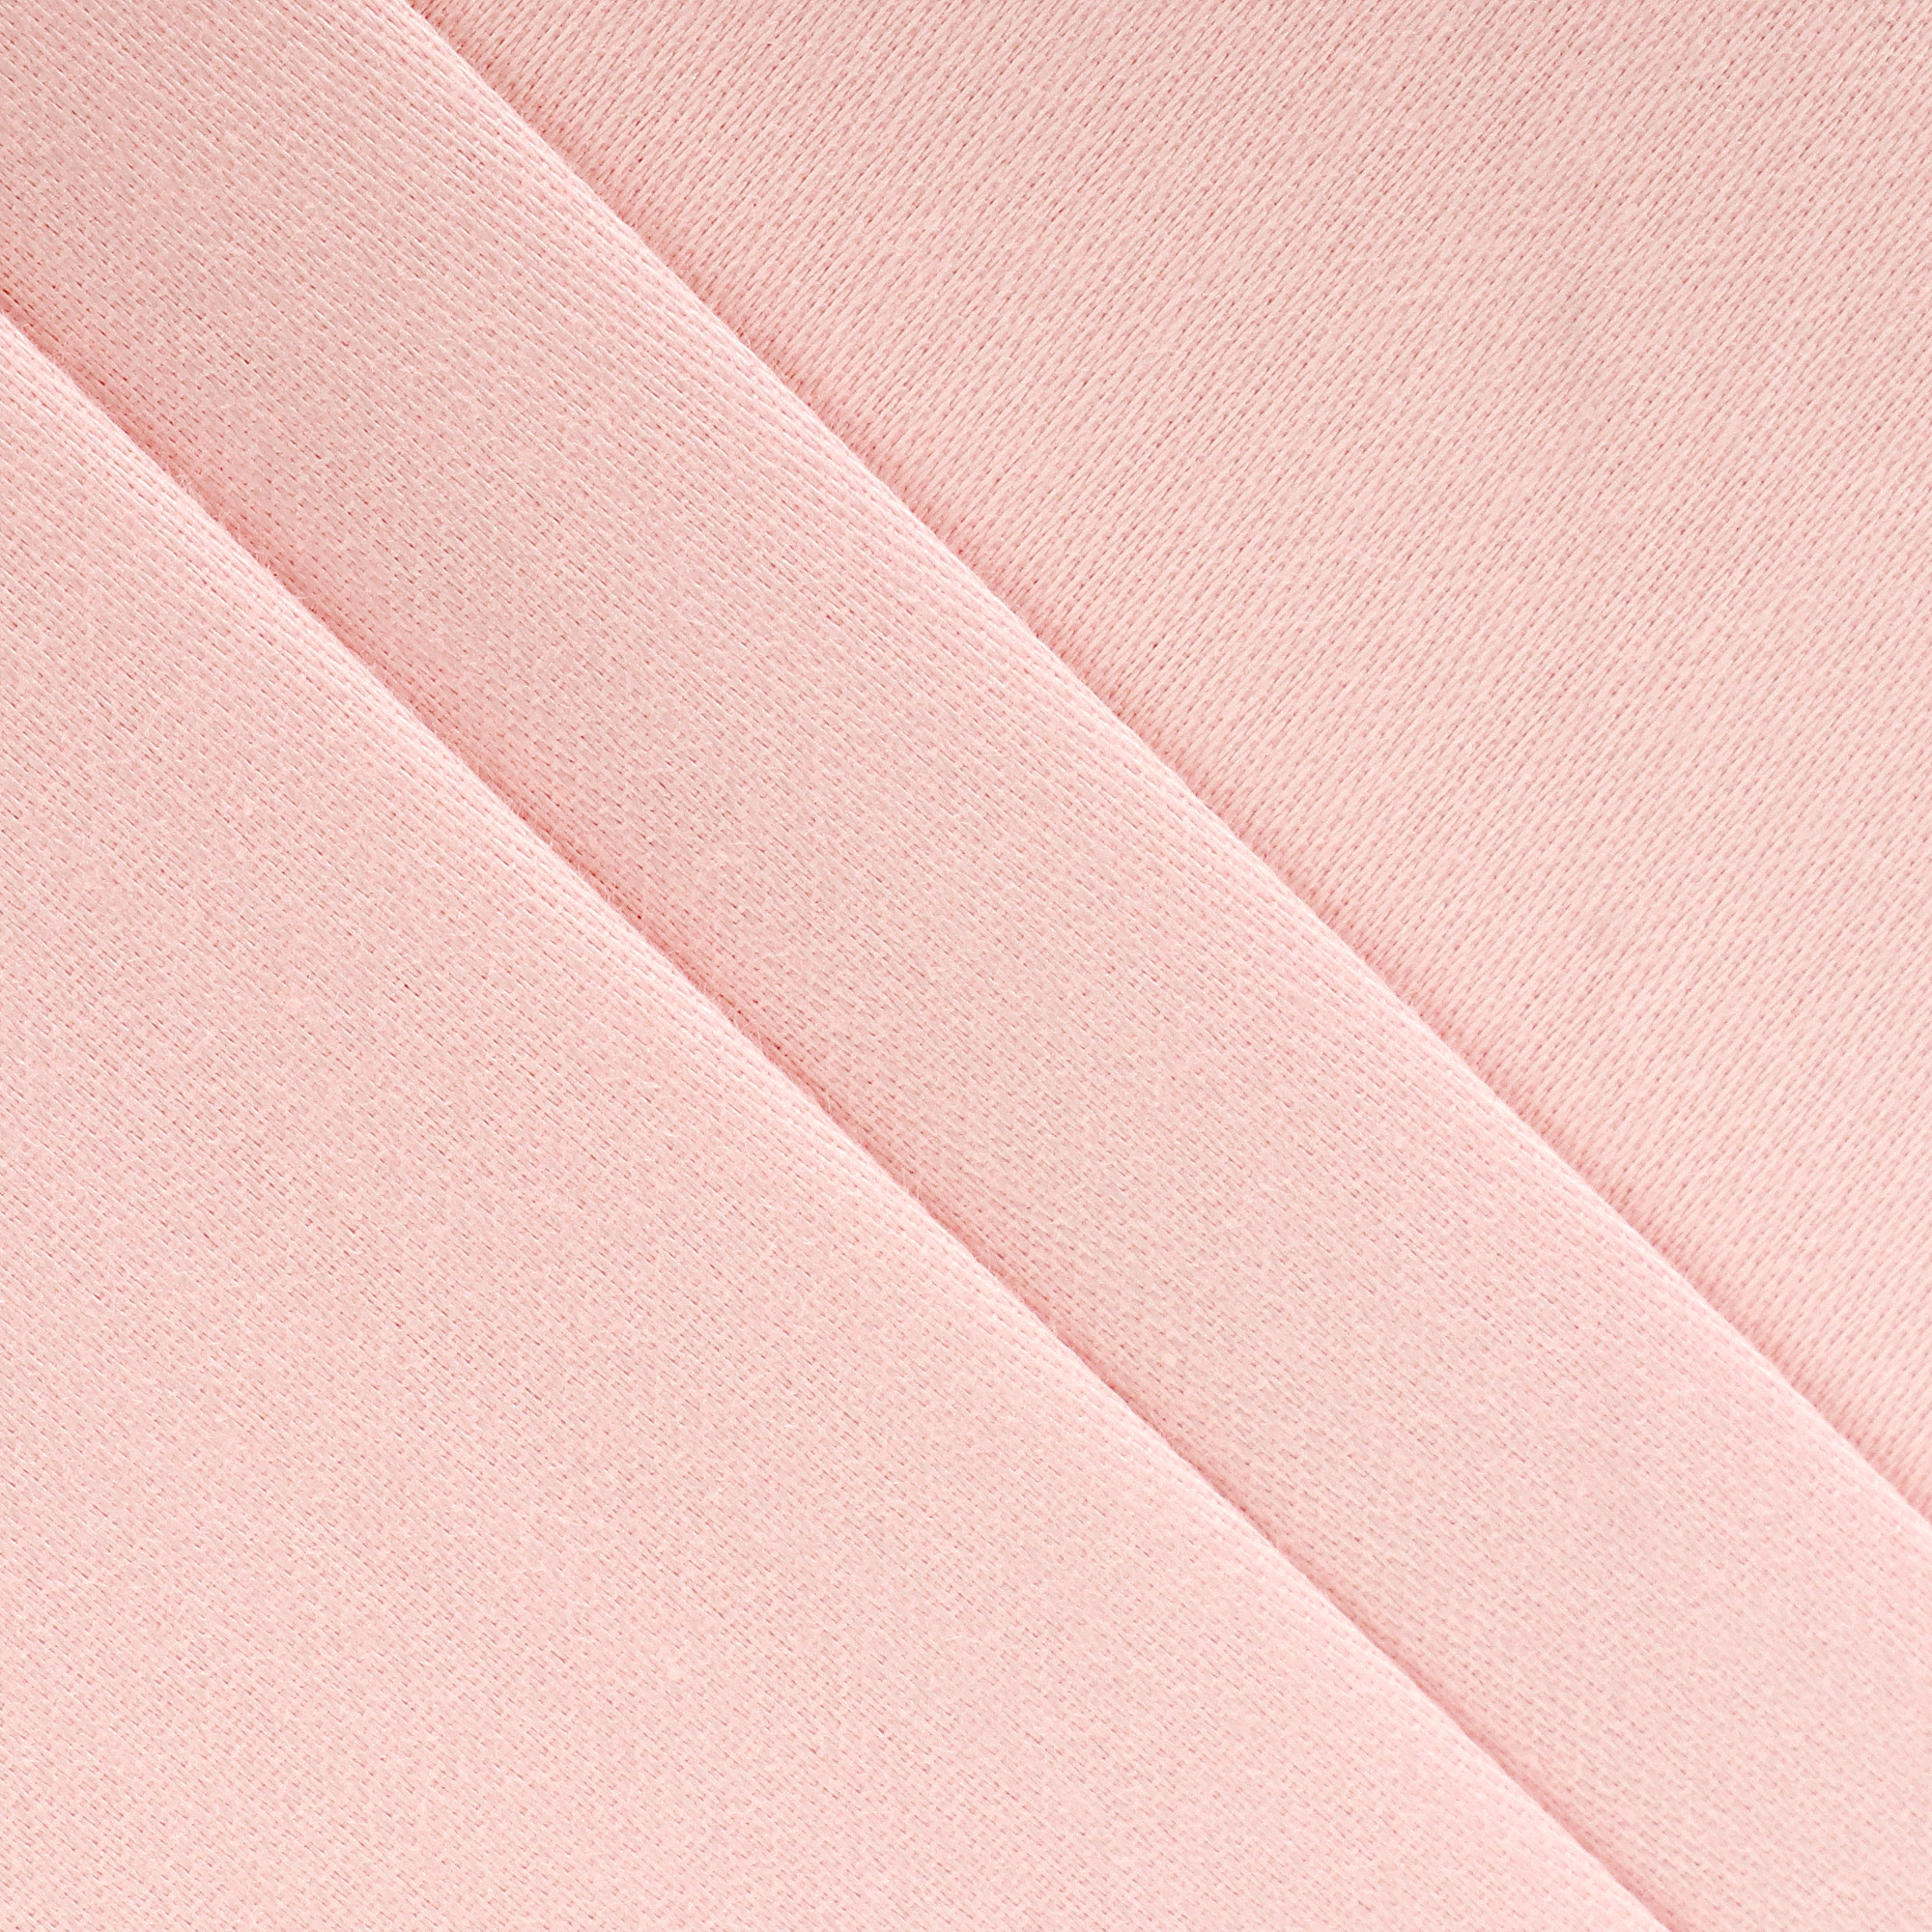 Комплект постельного белья La Besse Сатин розовый Кинг сайз, размер Кинг сайз - фото 3